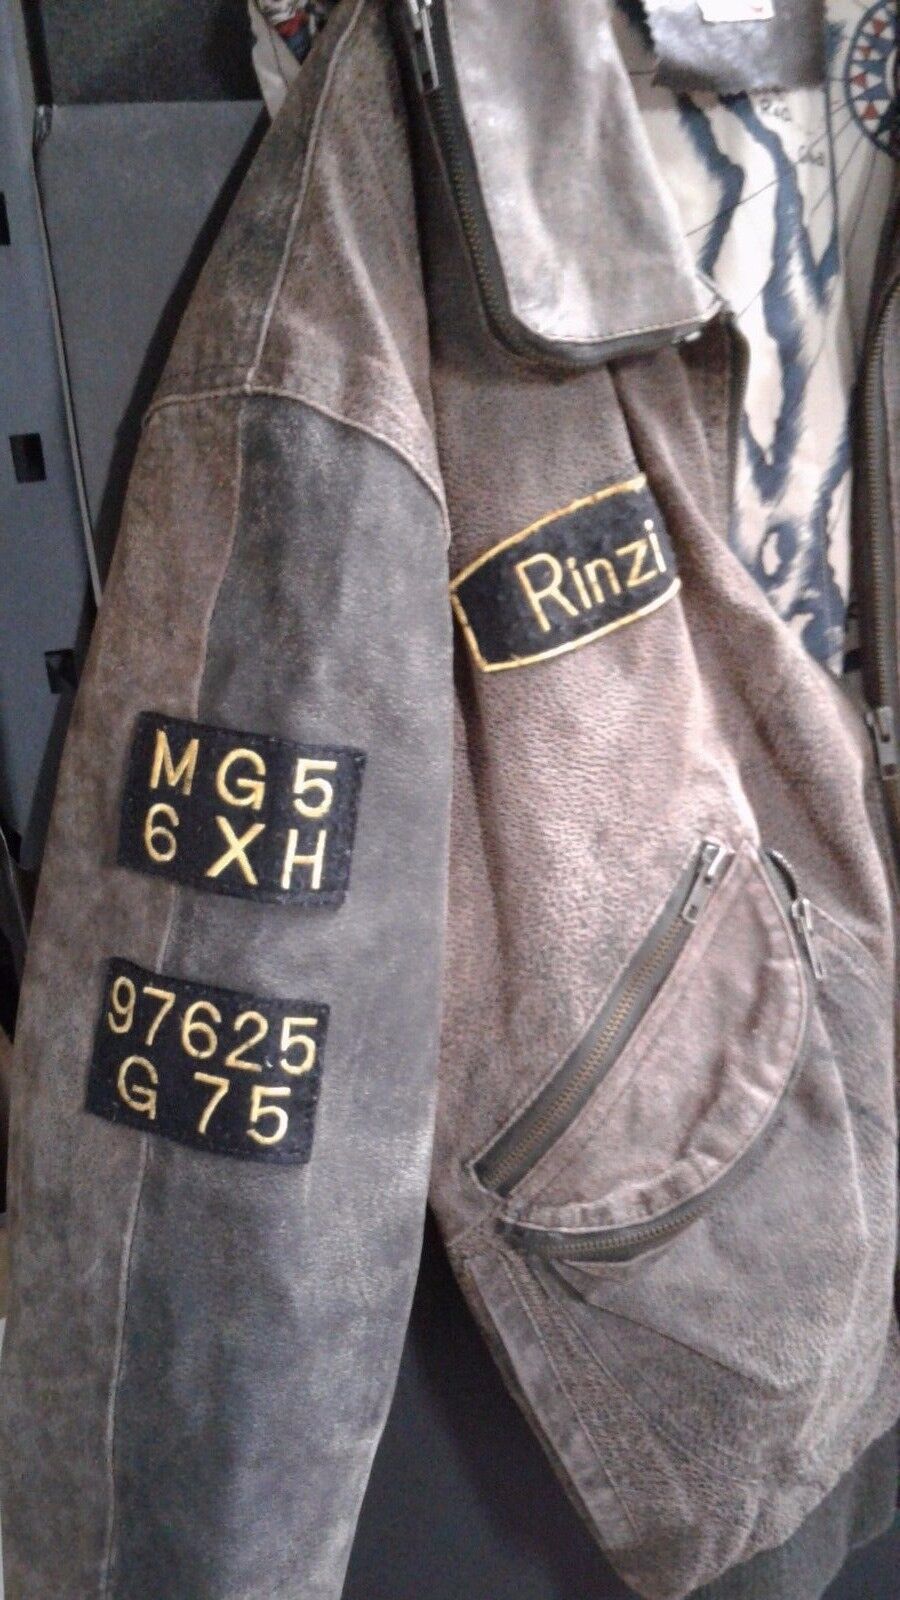 Vintage Rinzi Bomber Jacket Used